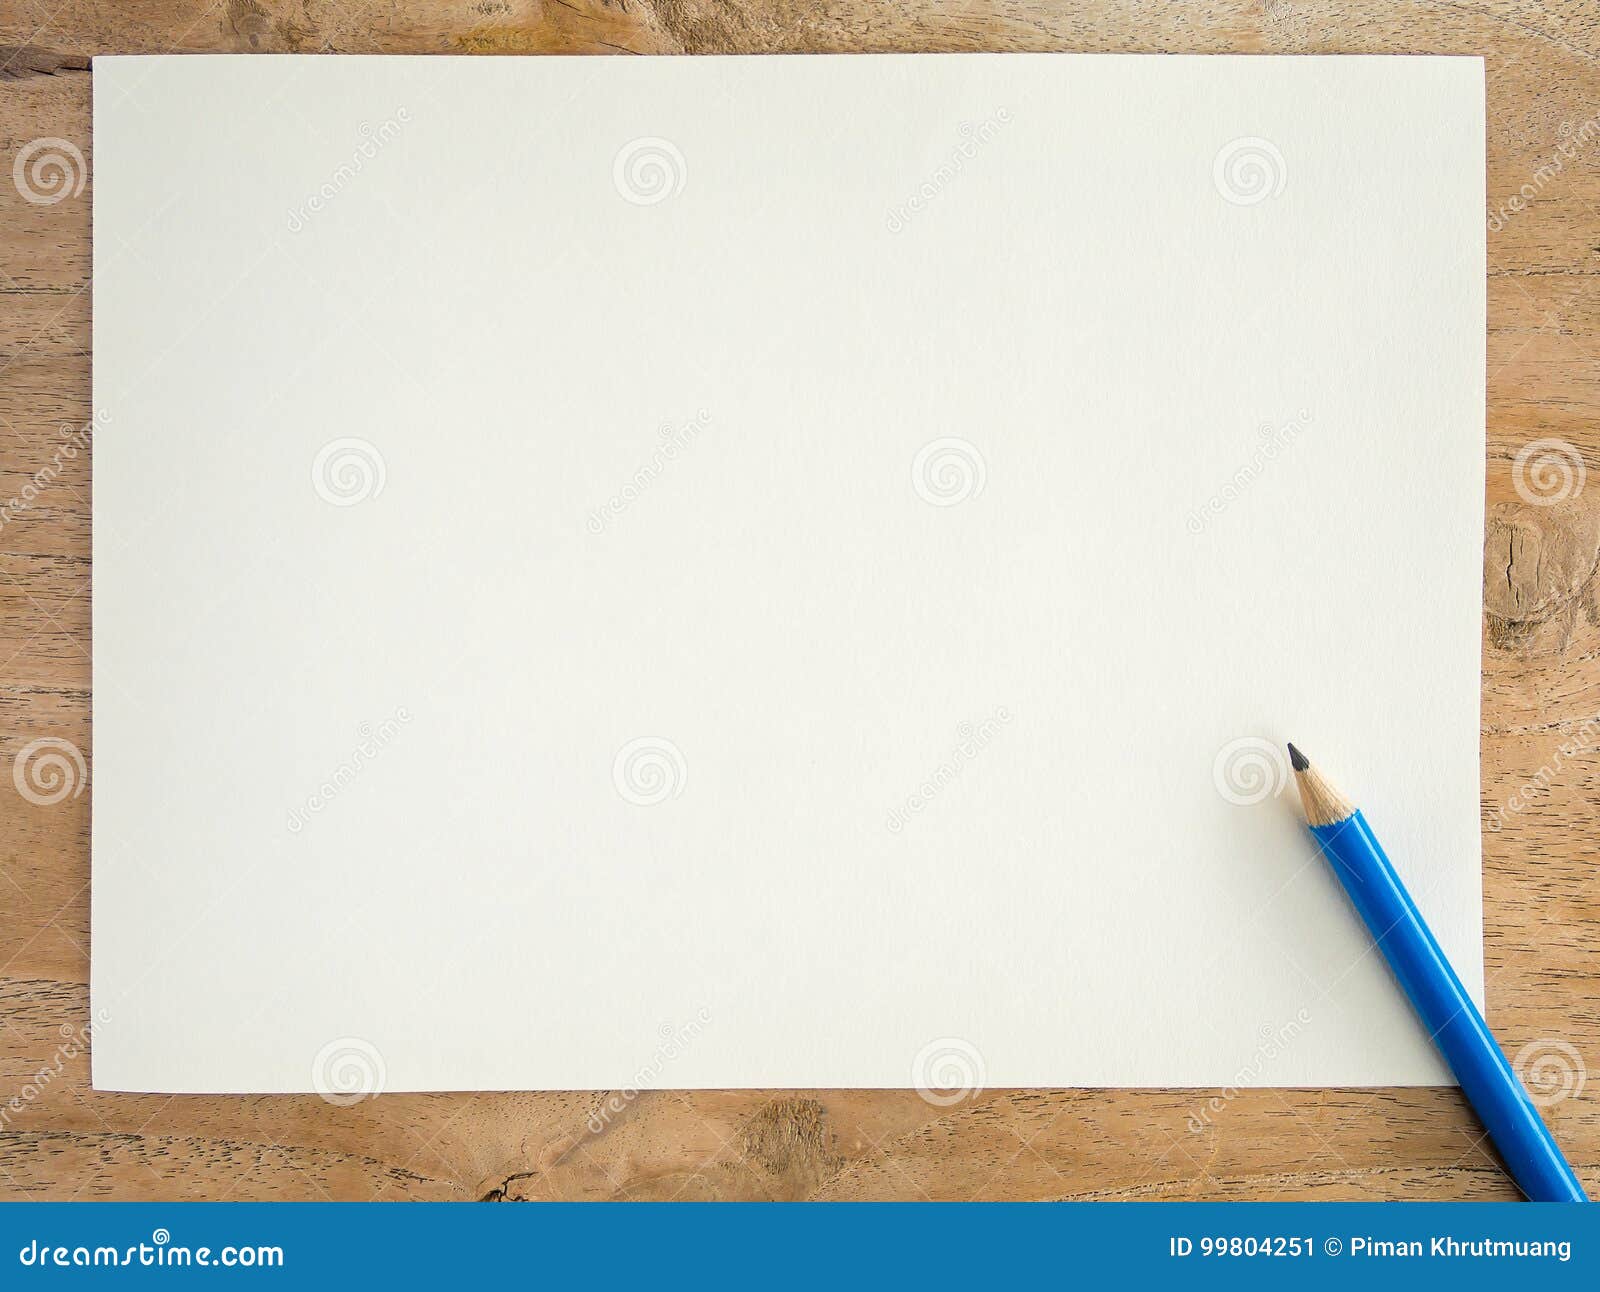 Листок не исписан. Белый лист и карандаш. Чистый лист бумаги. Белый лист для рисования. Лист бумаги и карандаш.